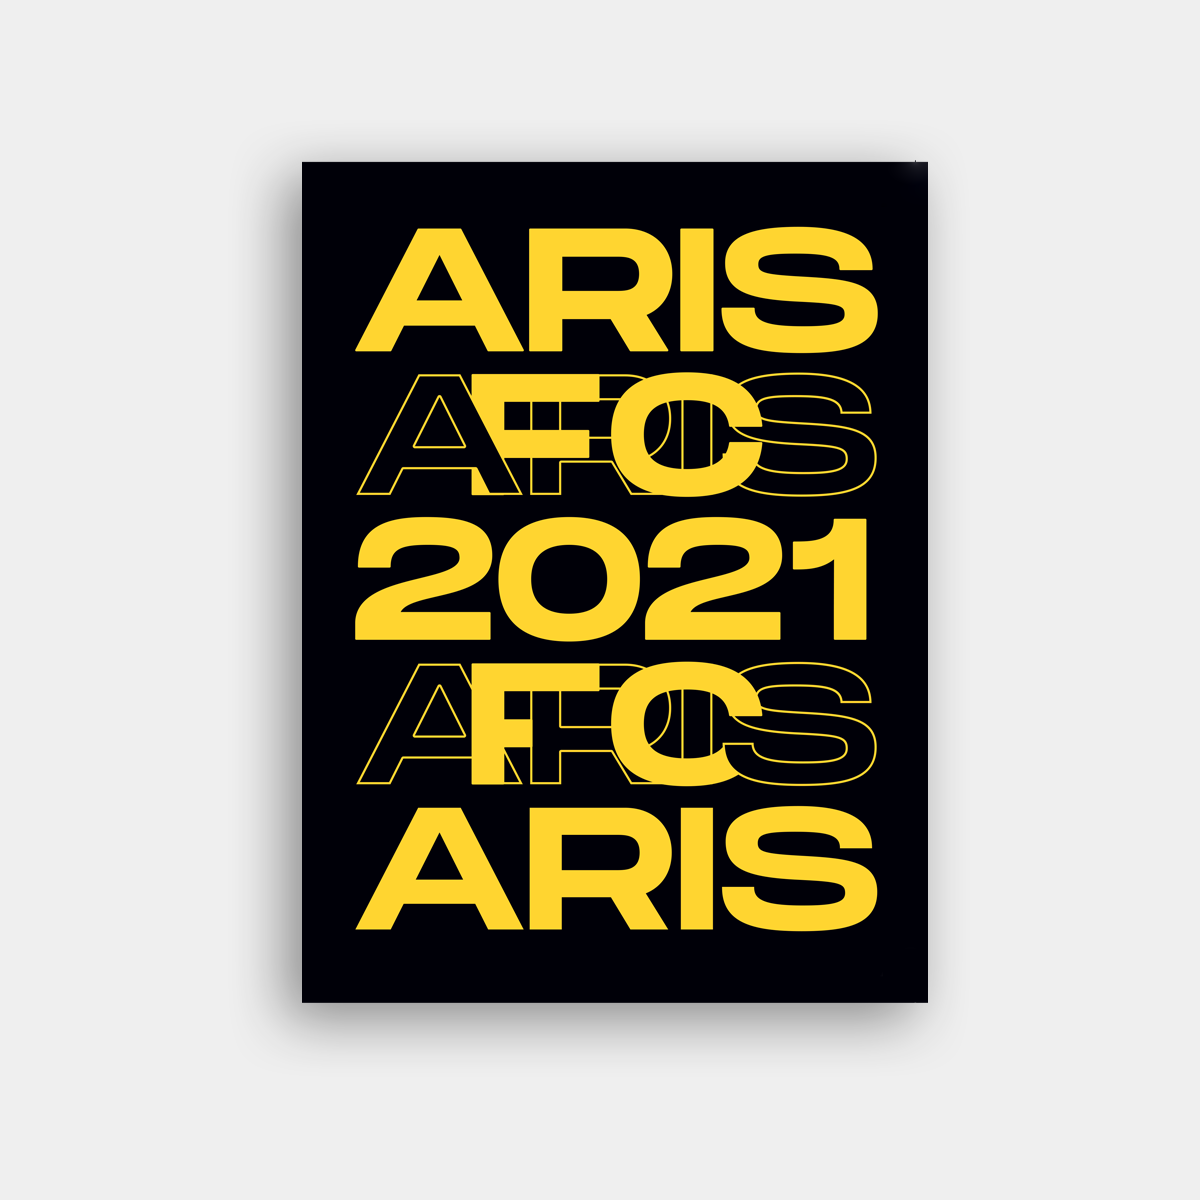 ARIS FC PLANNER 2021